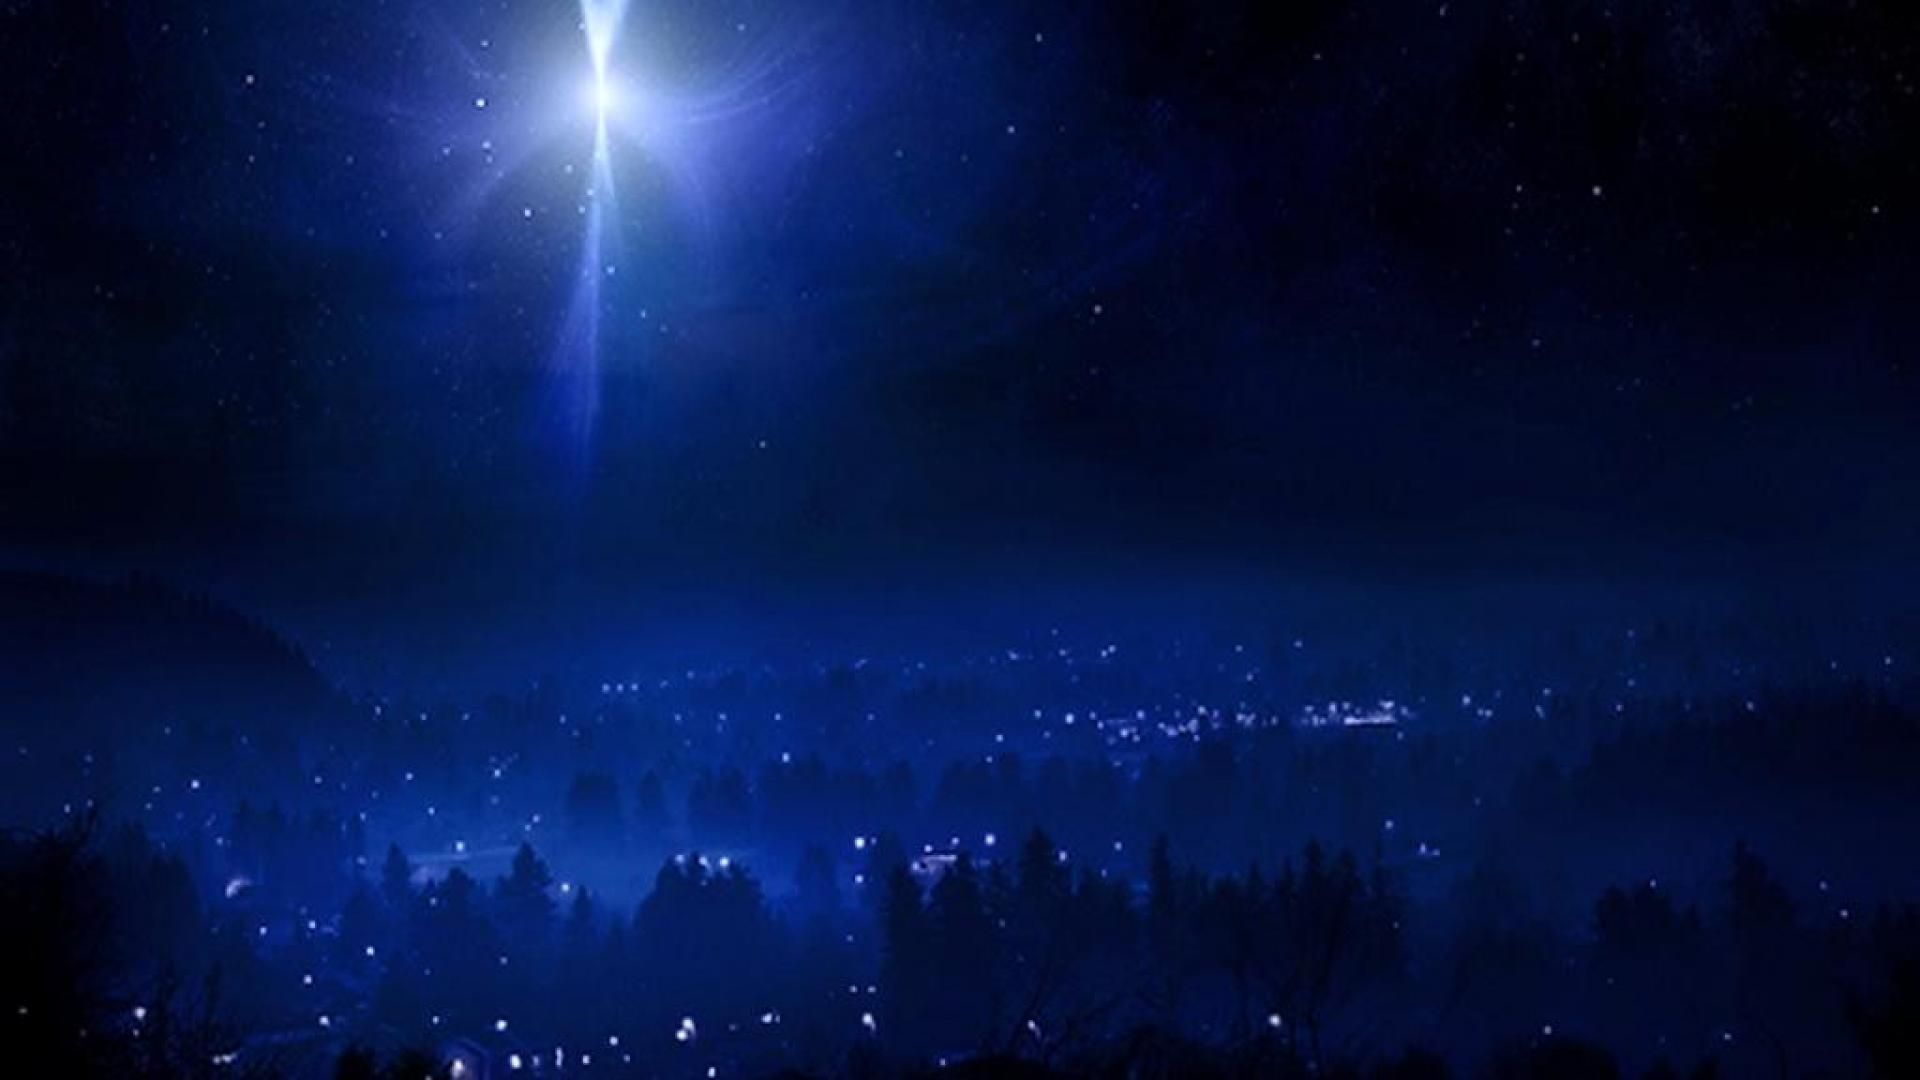 Hình nền ngôi sao Thánh giáng tràn ngập tình yêu và sự an lành của đêm Noel. Hãy để dòng hình nền này mang đến cho bạn không khí Giáng Sinh ấm áp.